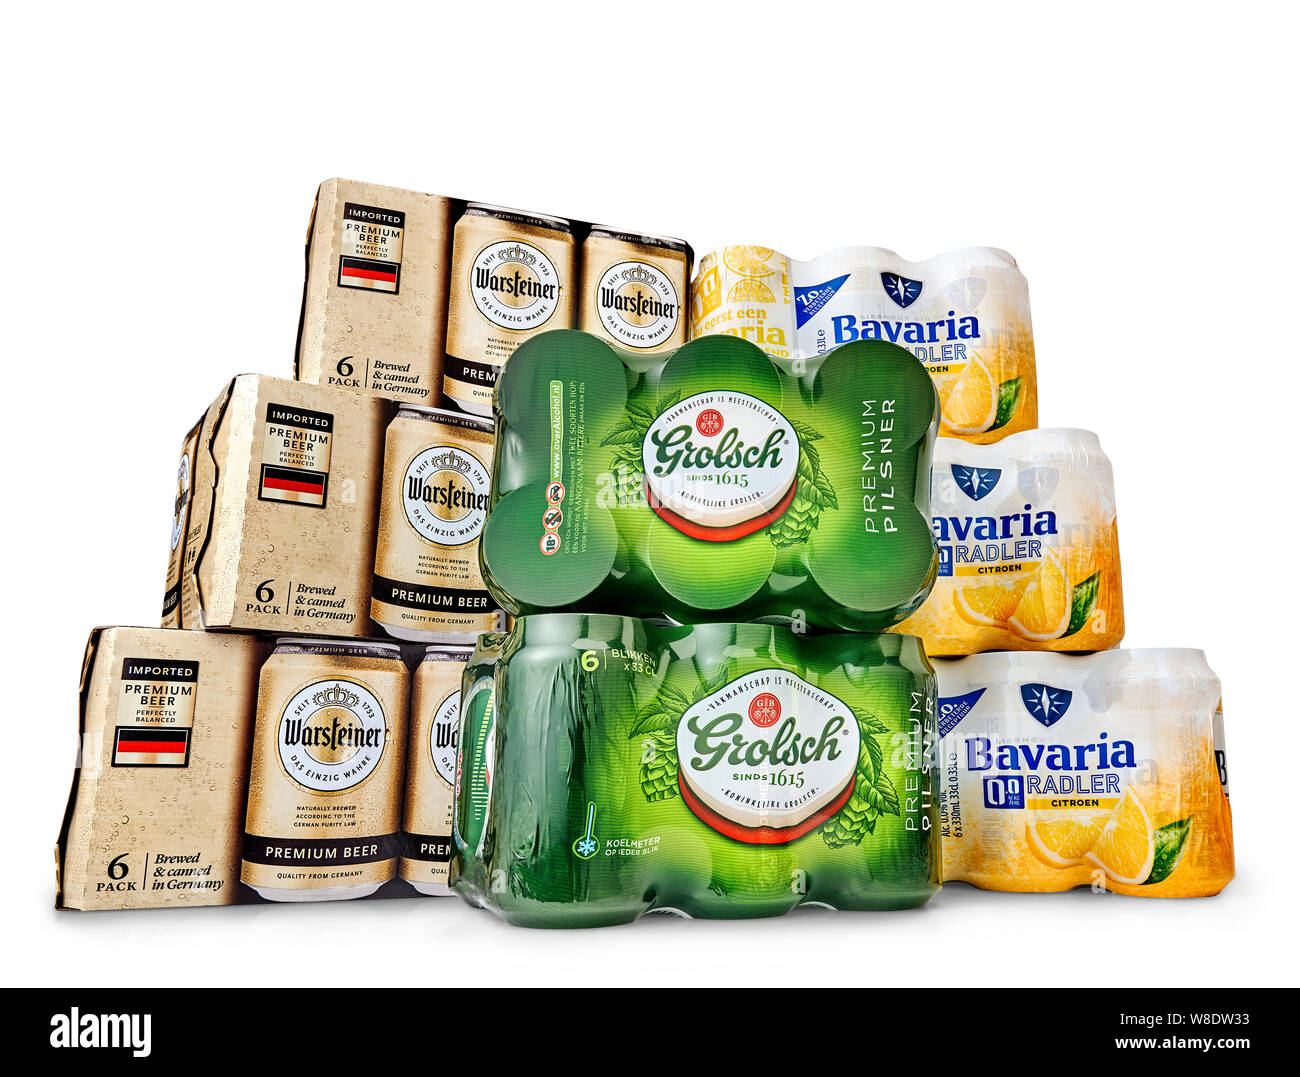 Netherlands, Haarlem - 19-05-2019: Grolsch, bavaria, warsteiner, Metal beer cans in a 6 pack package. Stock Photo